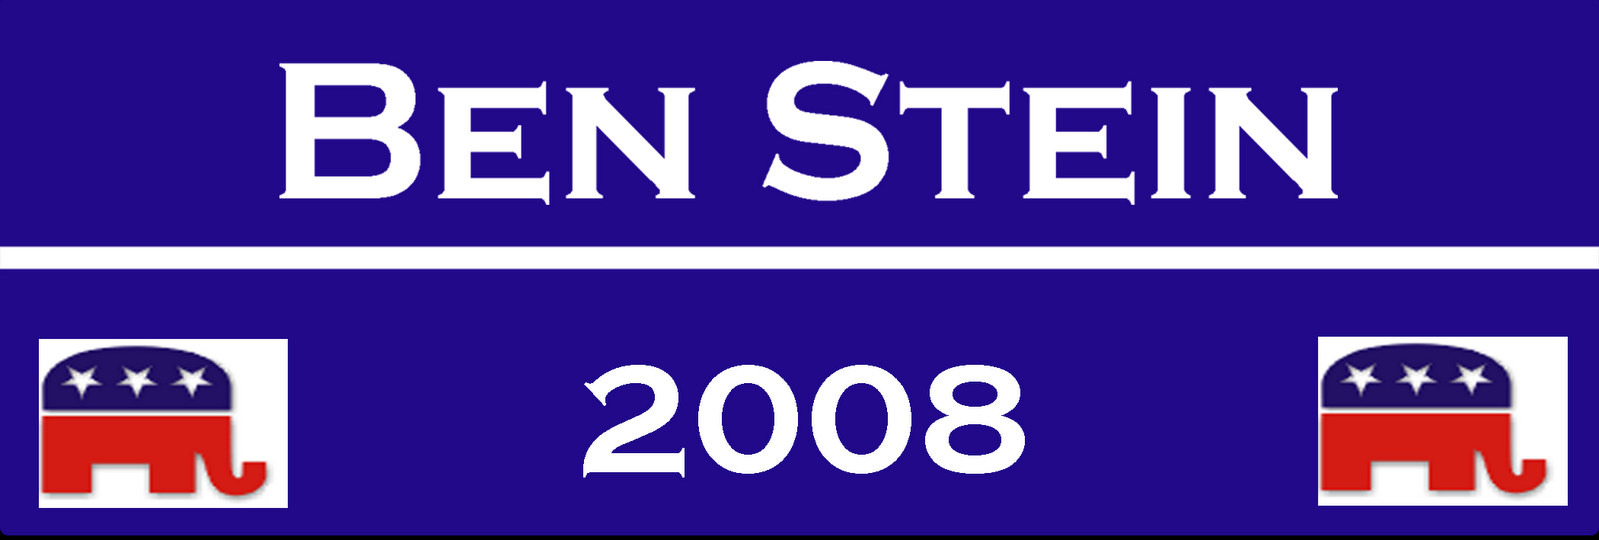 [Ben+Stein+bumper+sticker.png]